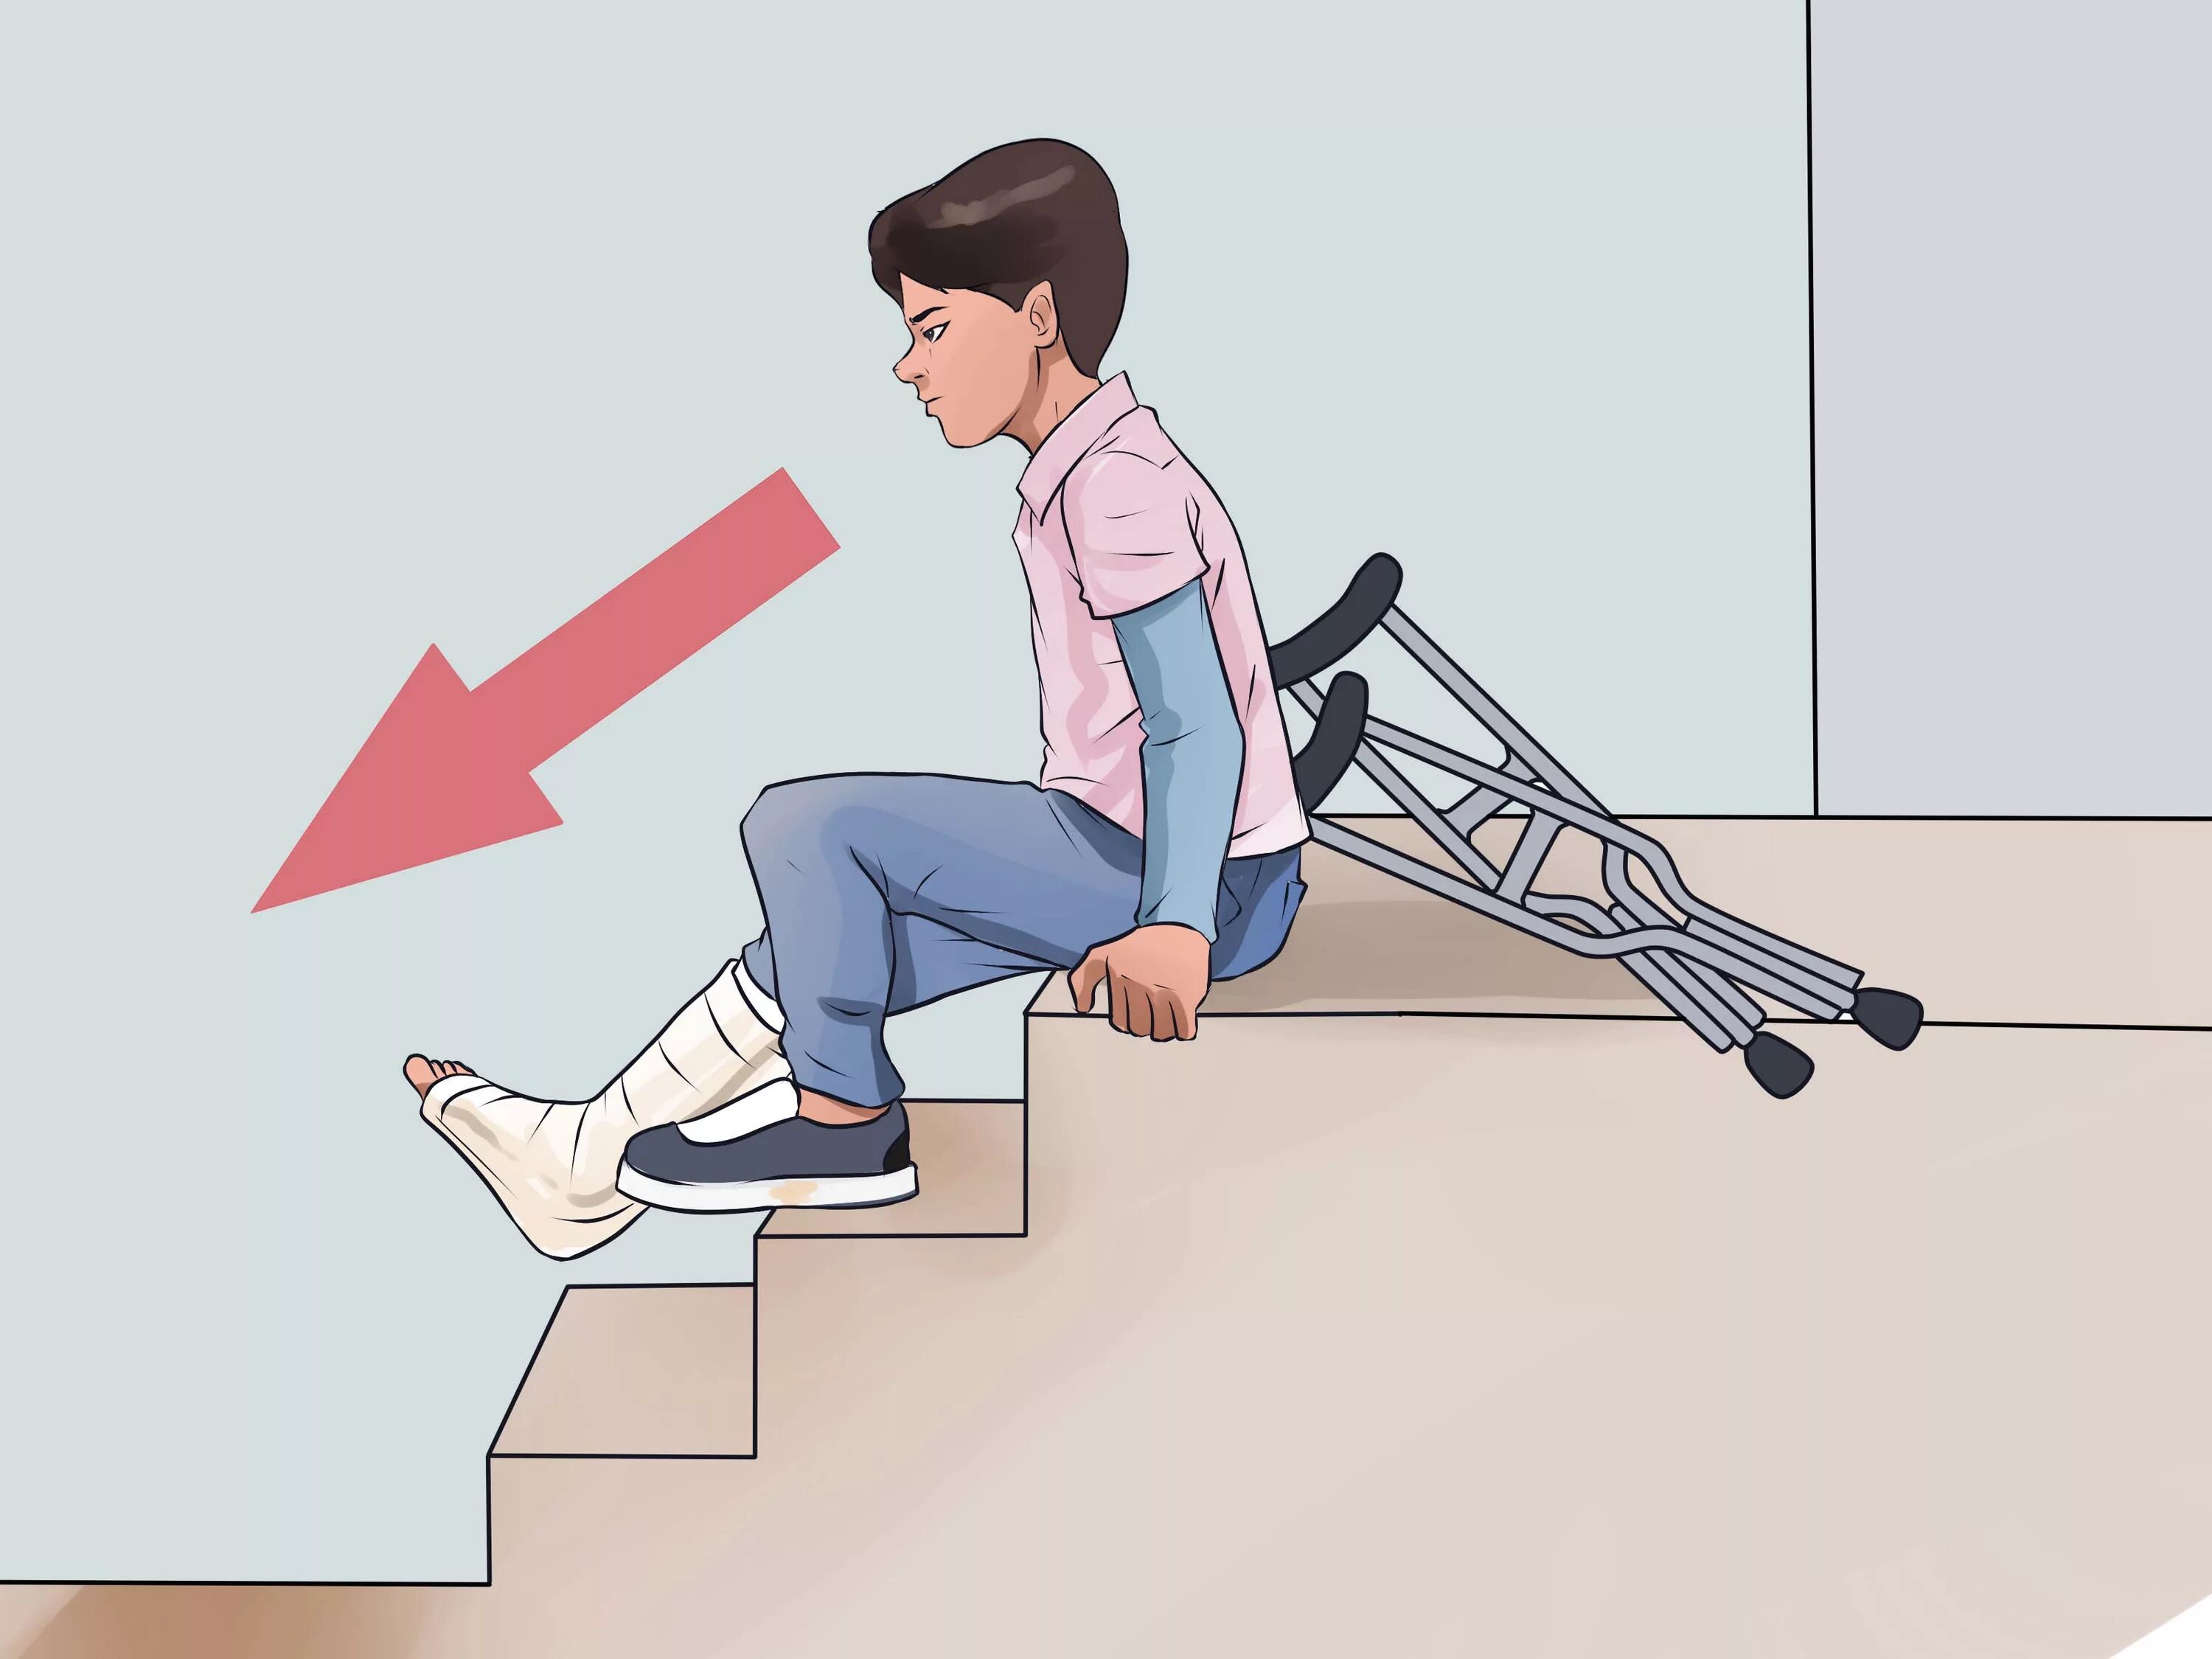 Спуск по лестнице на костылях. Техника хождения на костылях по ступенькам. Ходьба на костылях по лестнице. Нужно будет спускаться с